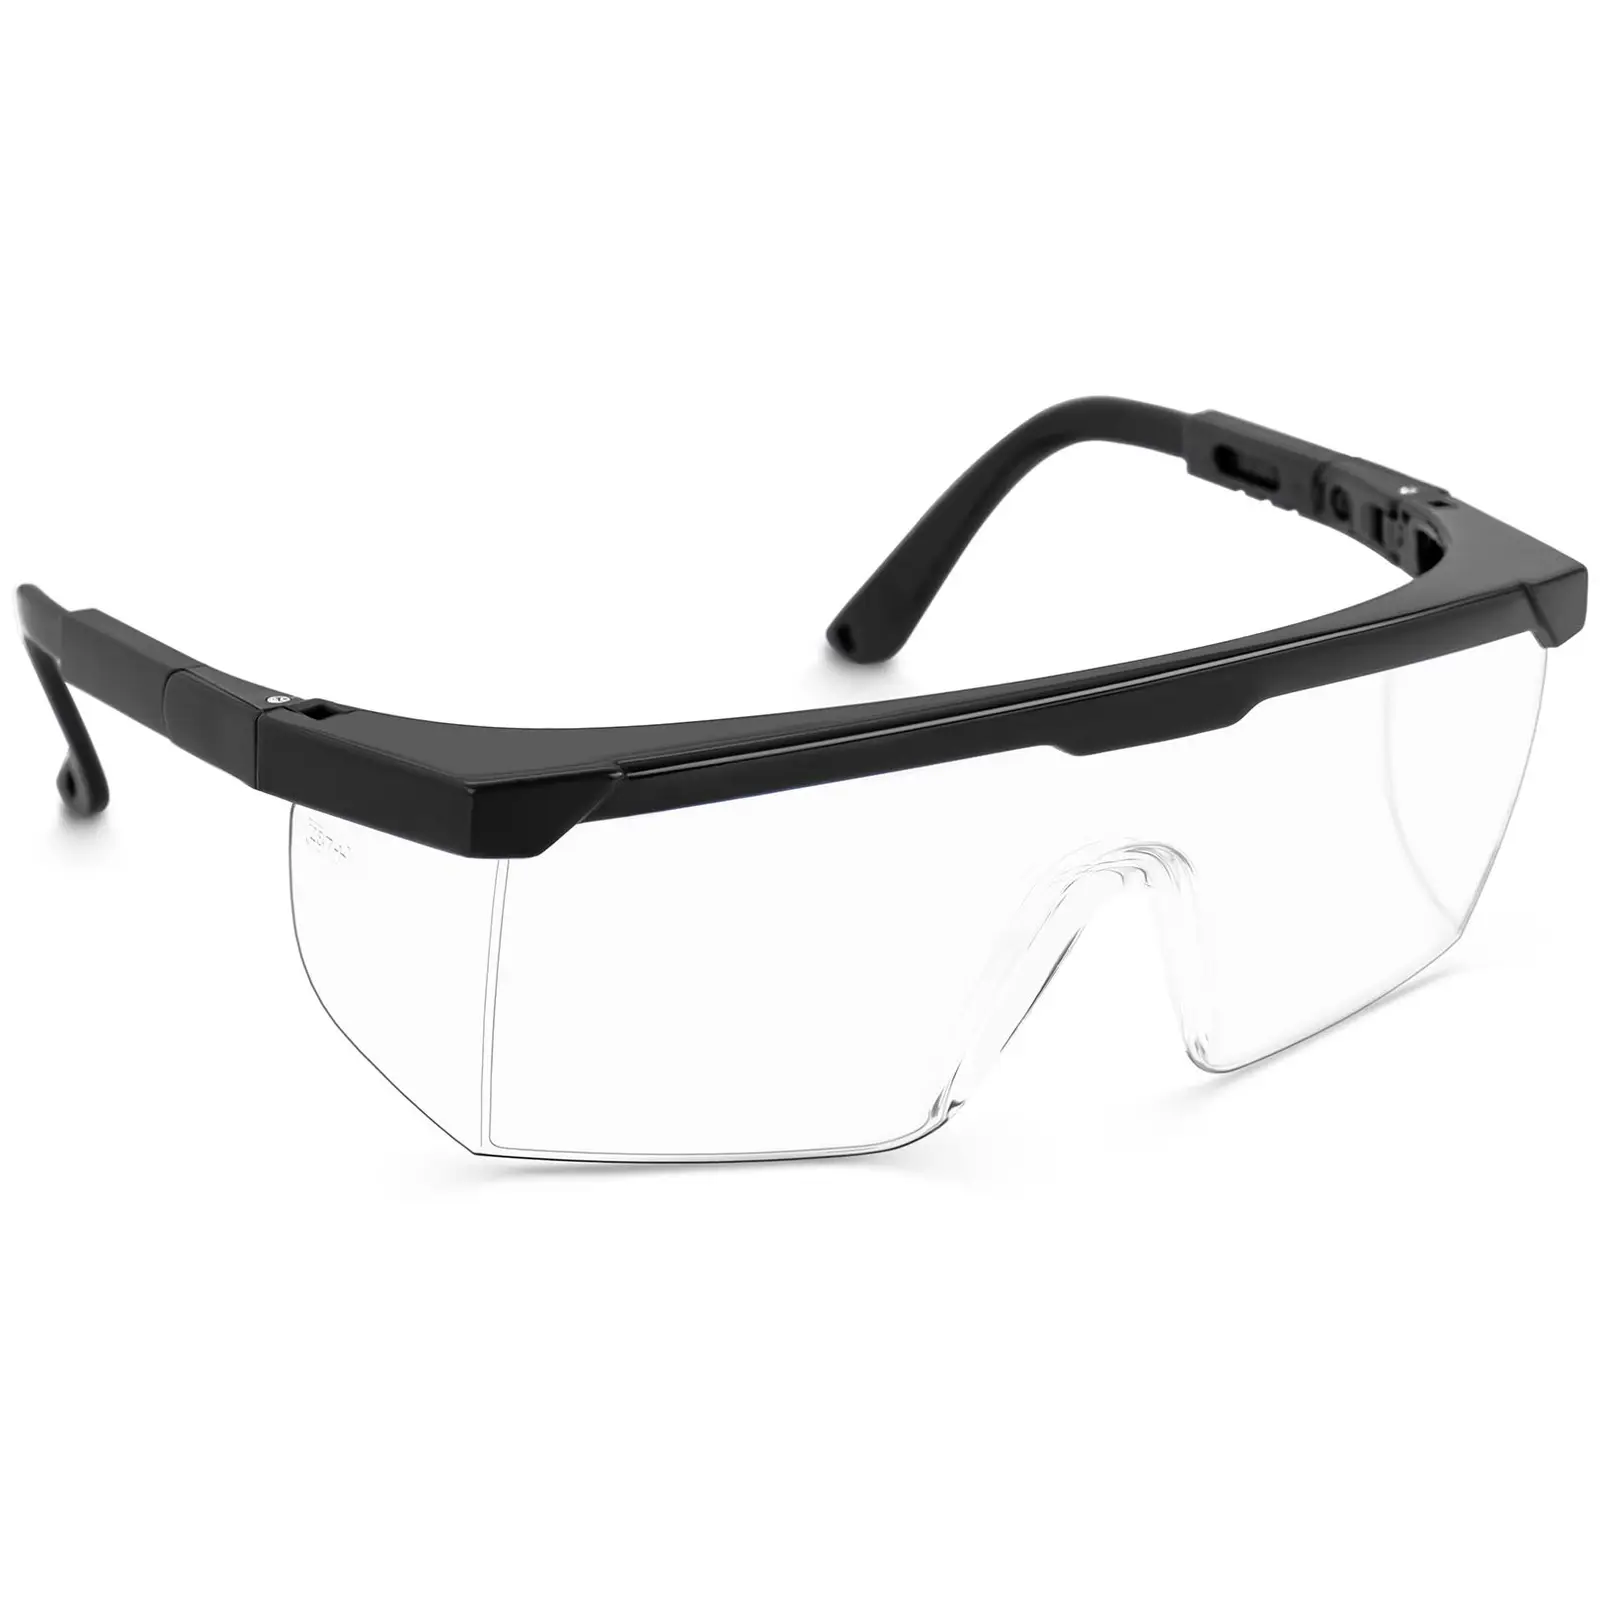 Beskyttelsesbriller - sett på 10 - justerbare